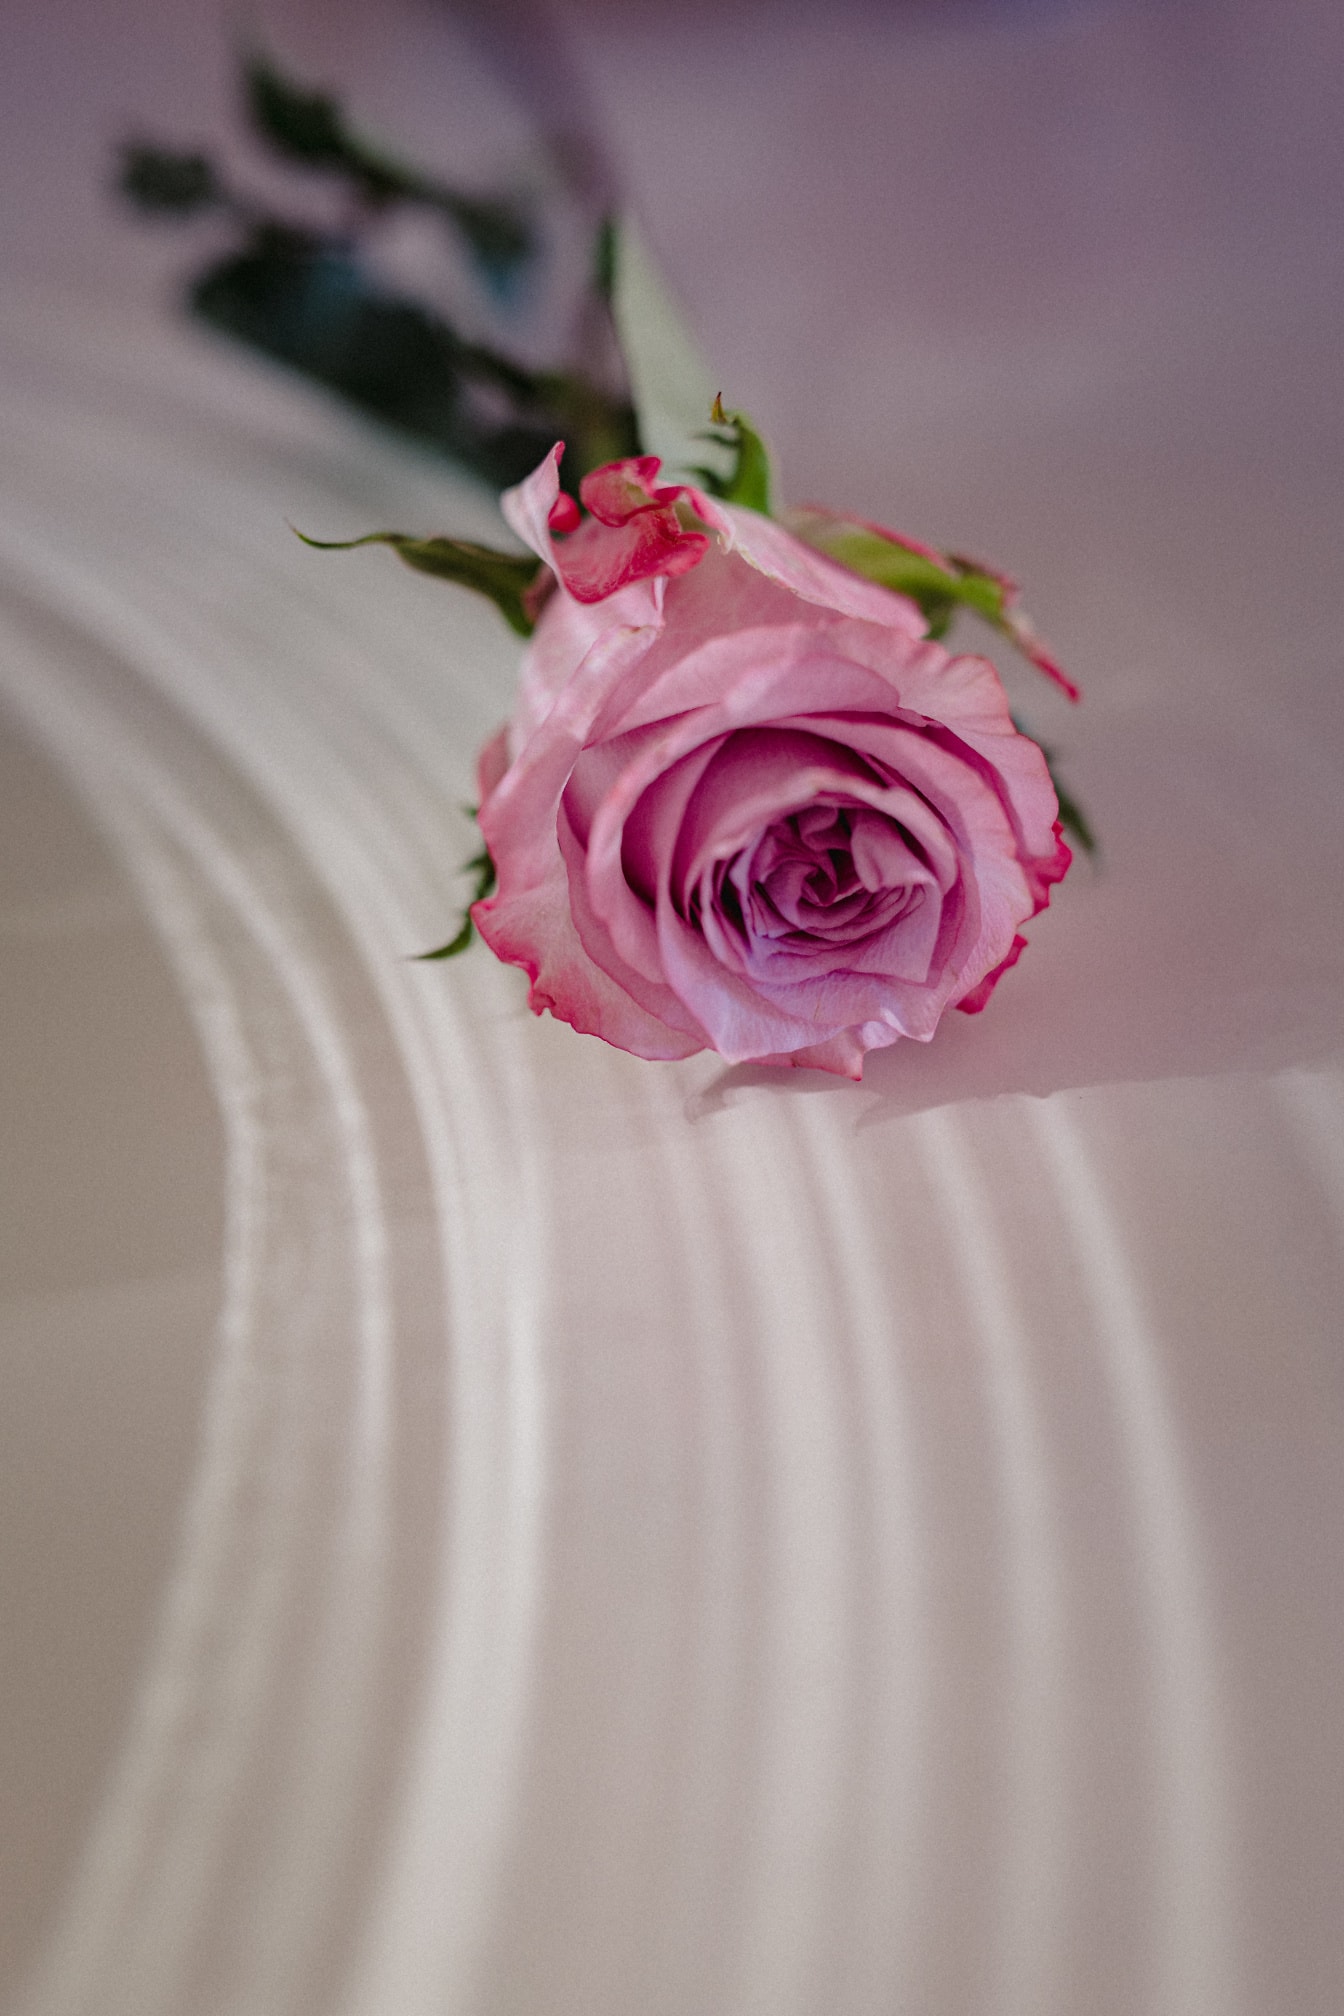 Рожева троянда подарунок на день святого Валентина на білій поверхні